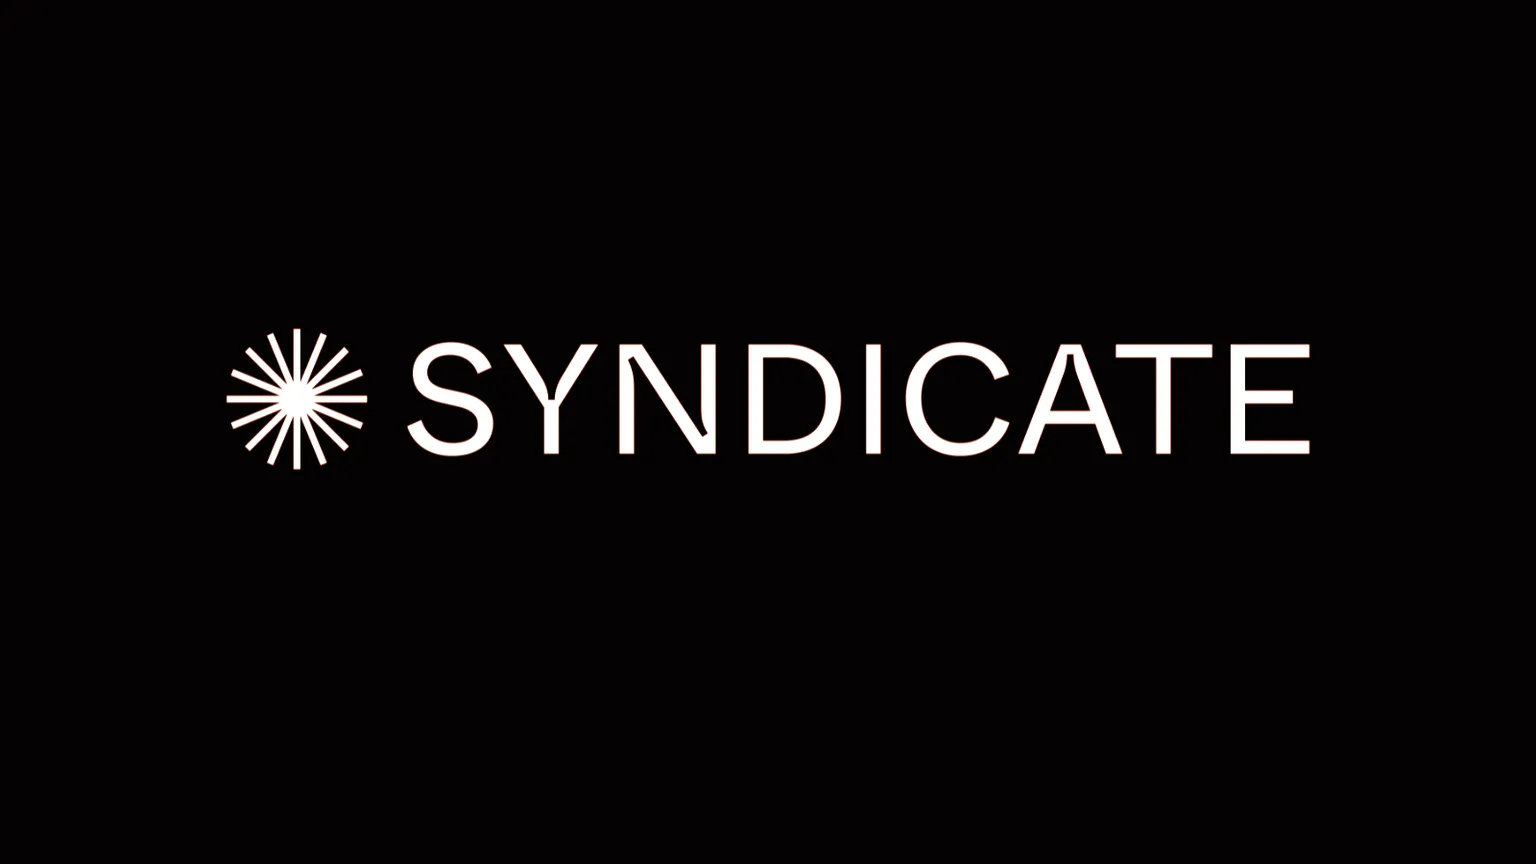 Image: Syndicate